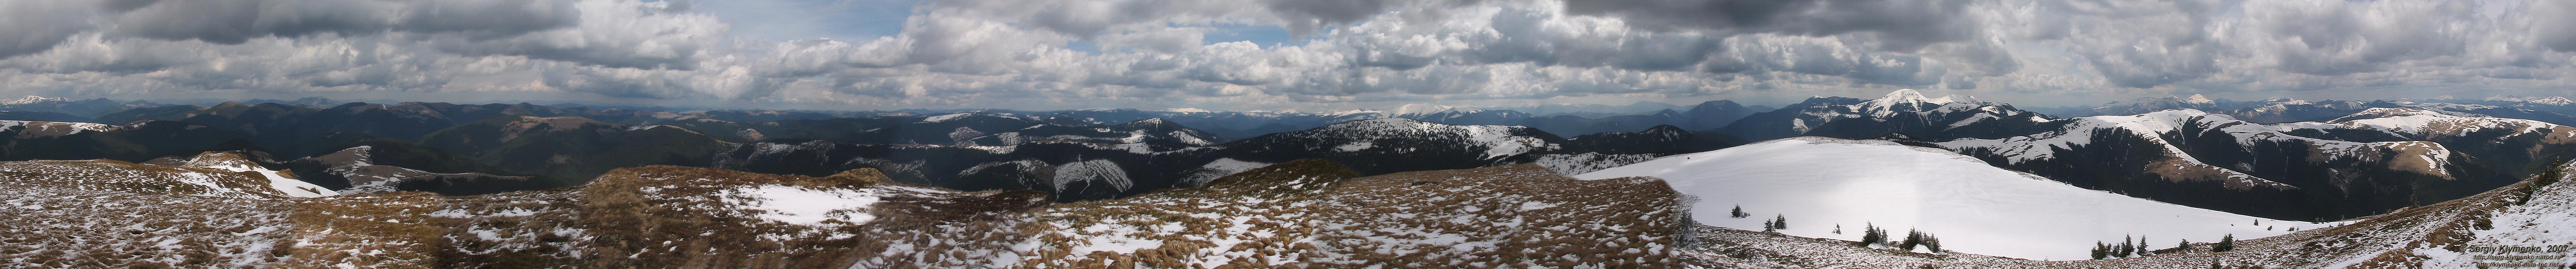 Фото Карпат, круговая панорама с вершины горы Чивчин (47°51'33